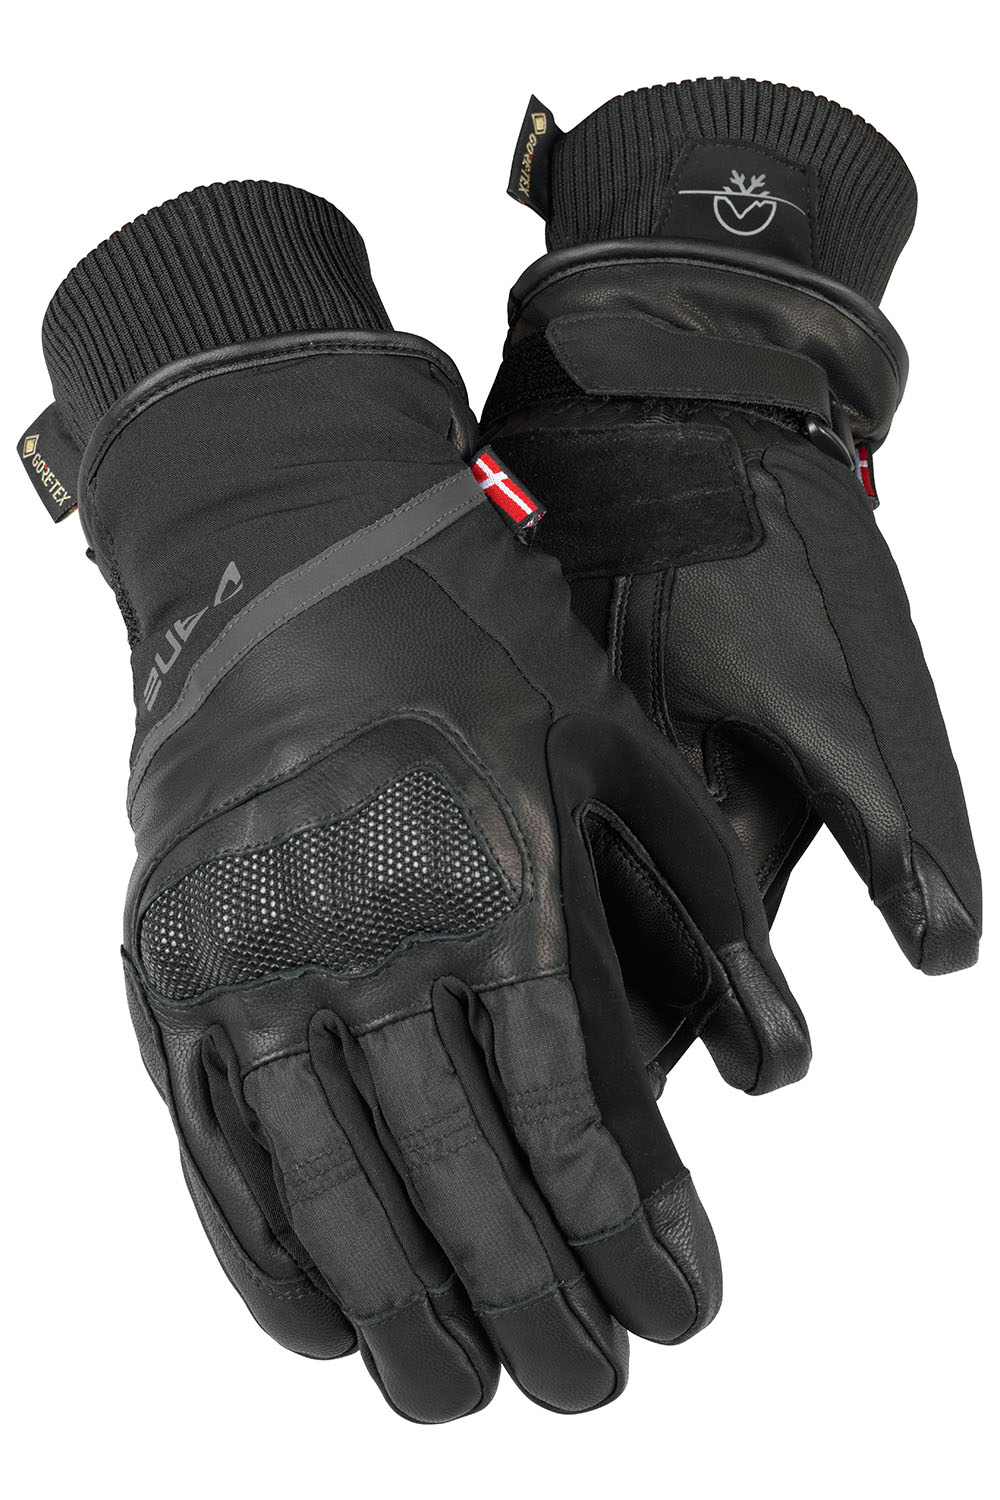 Winddicht Wasserdicht Handschuhe Schwarz XL Motorradhandschuhe Winter 3M Thinsulate